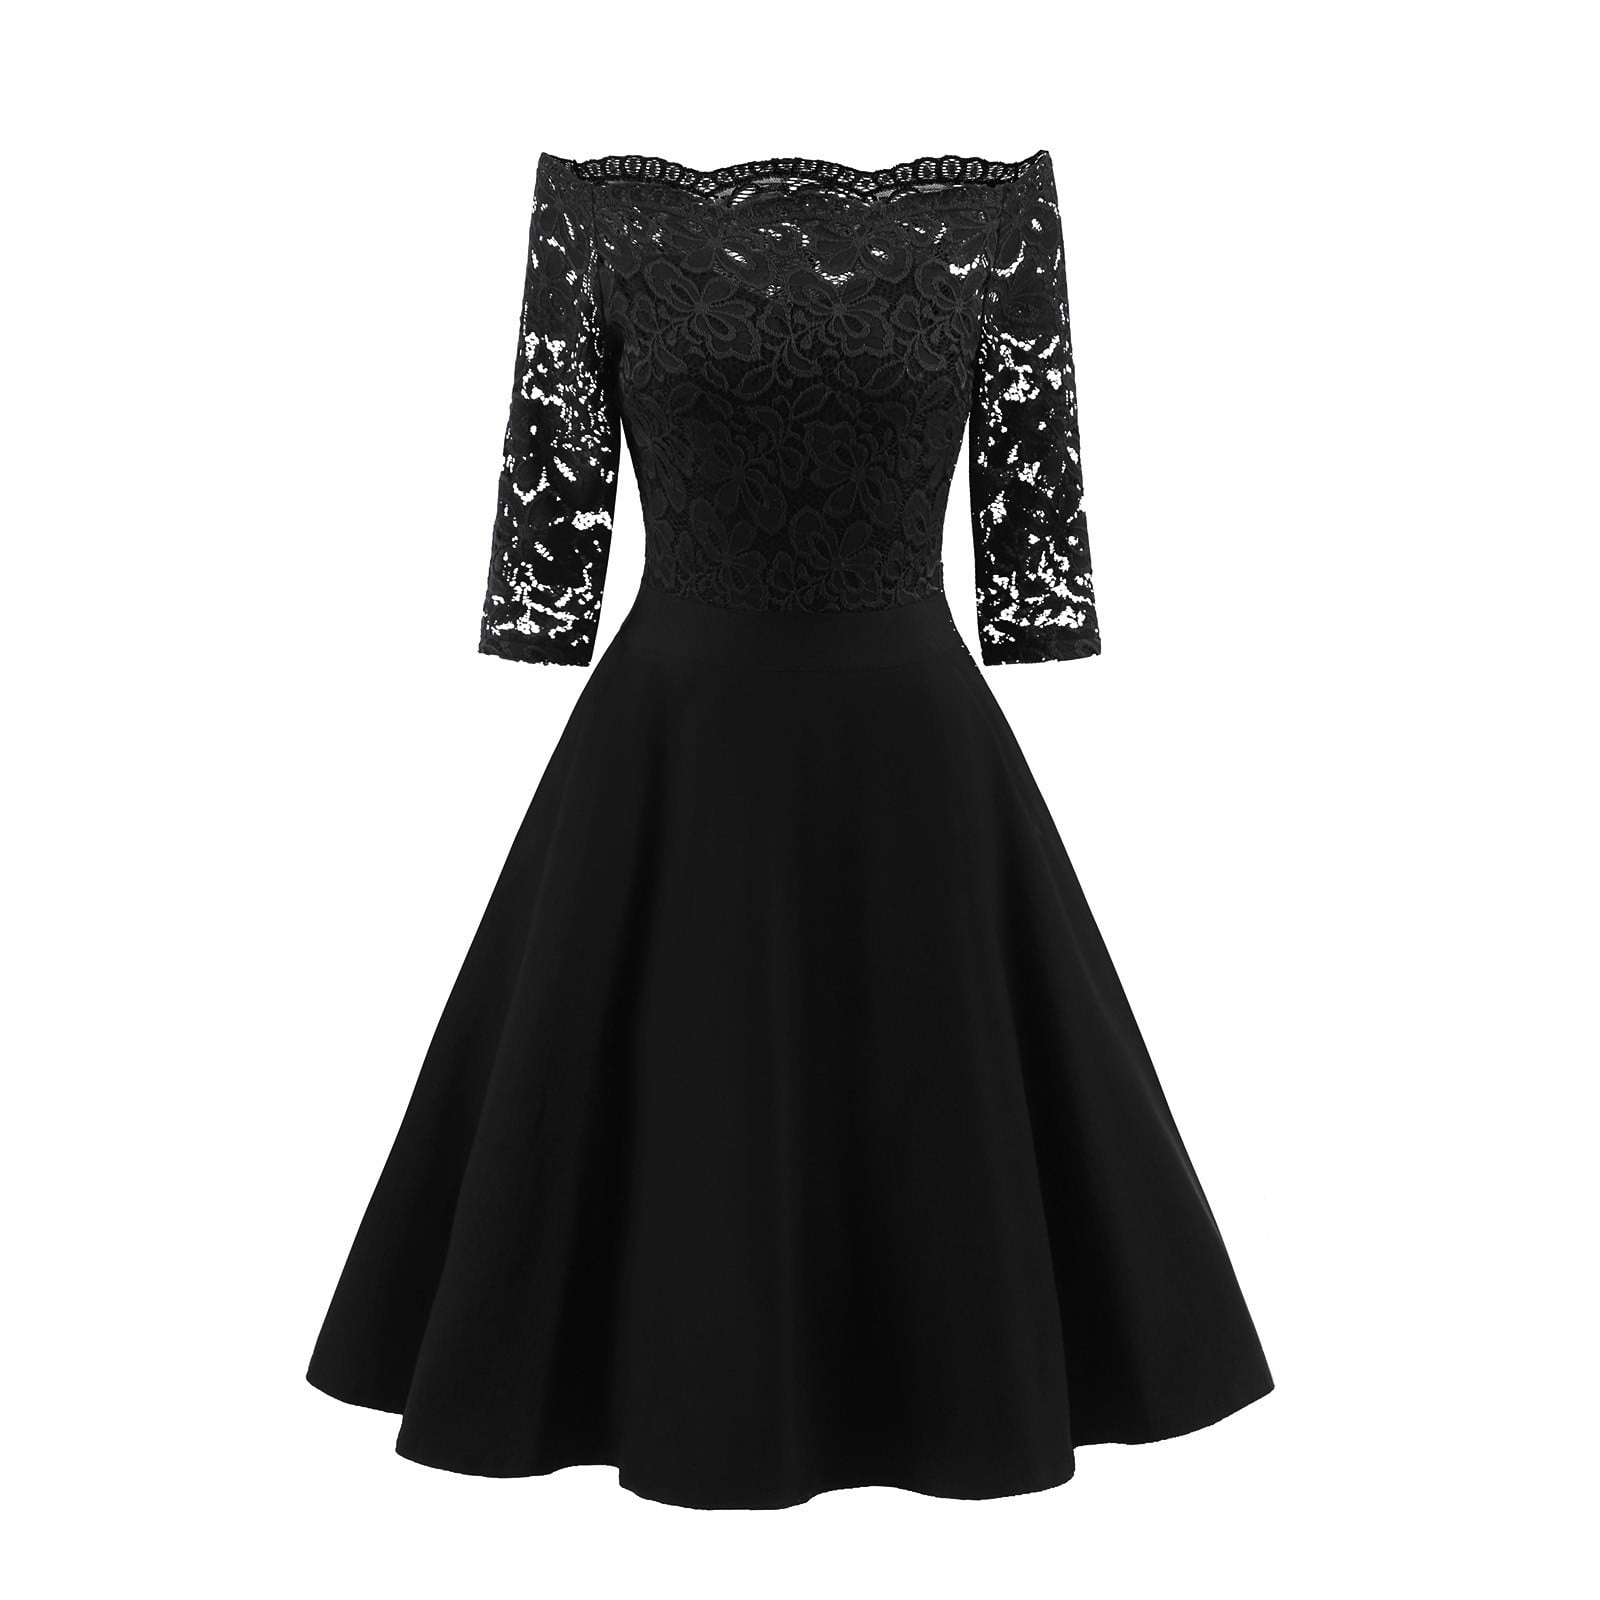 Petite Lace Bodycon One Shoulder Midi Dress in Black – Chi Chi London